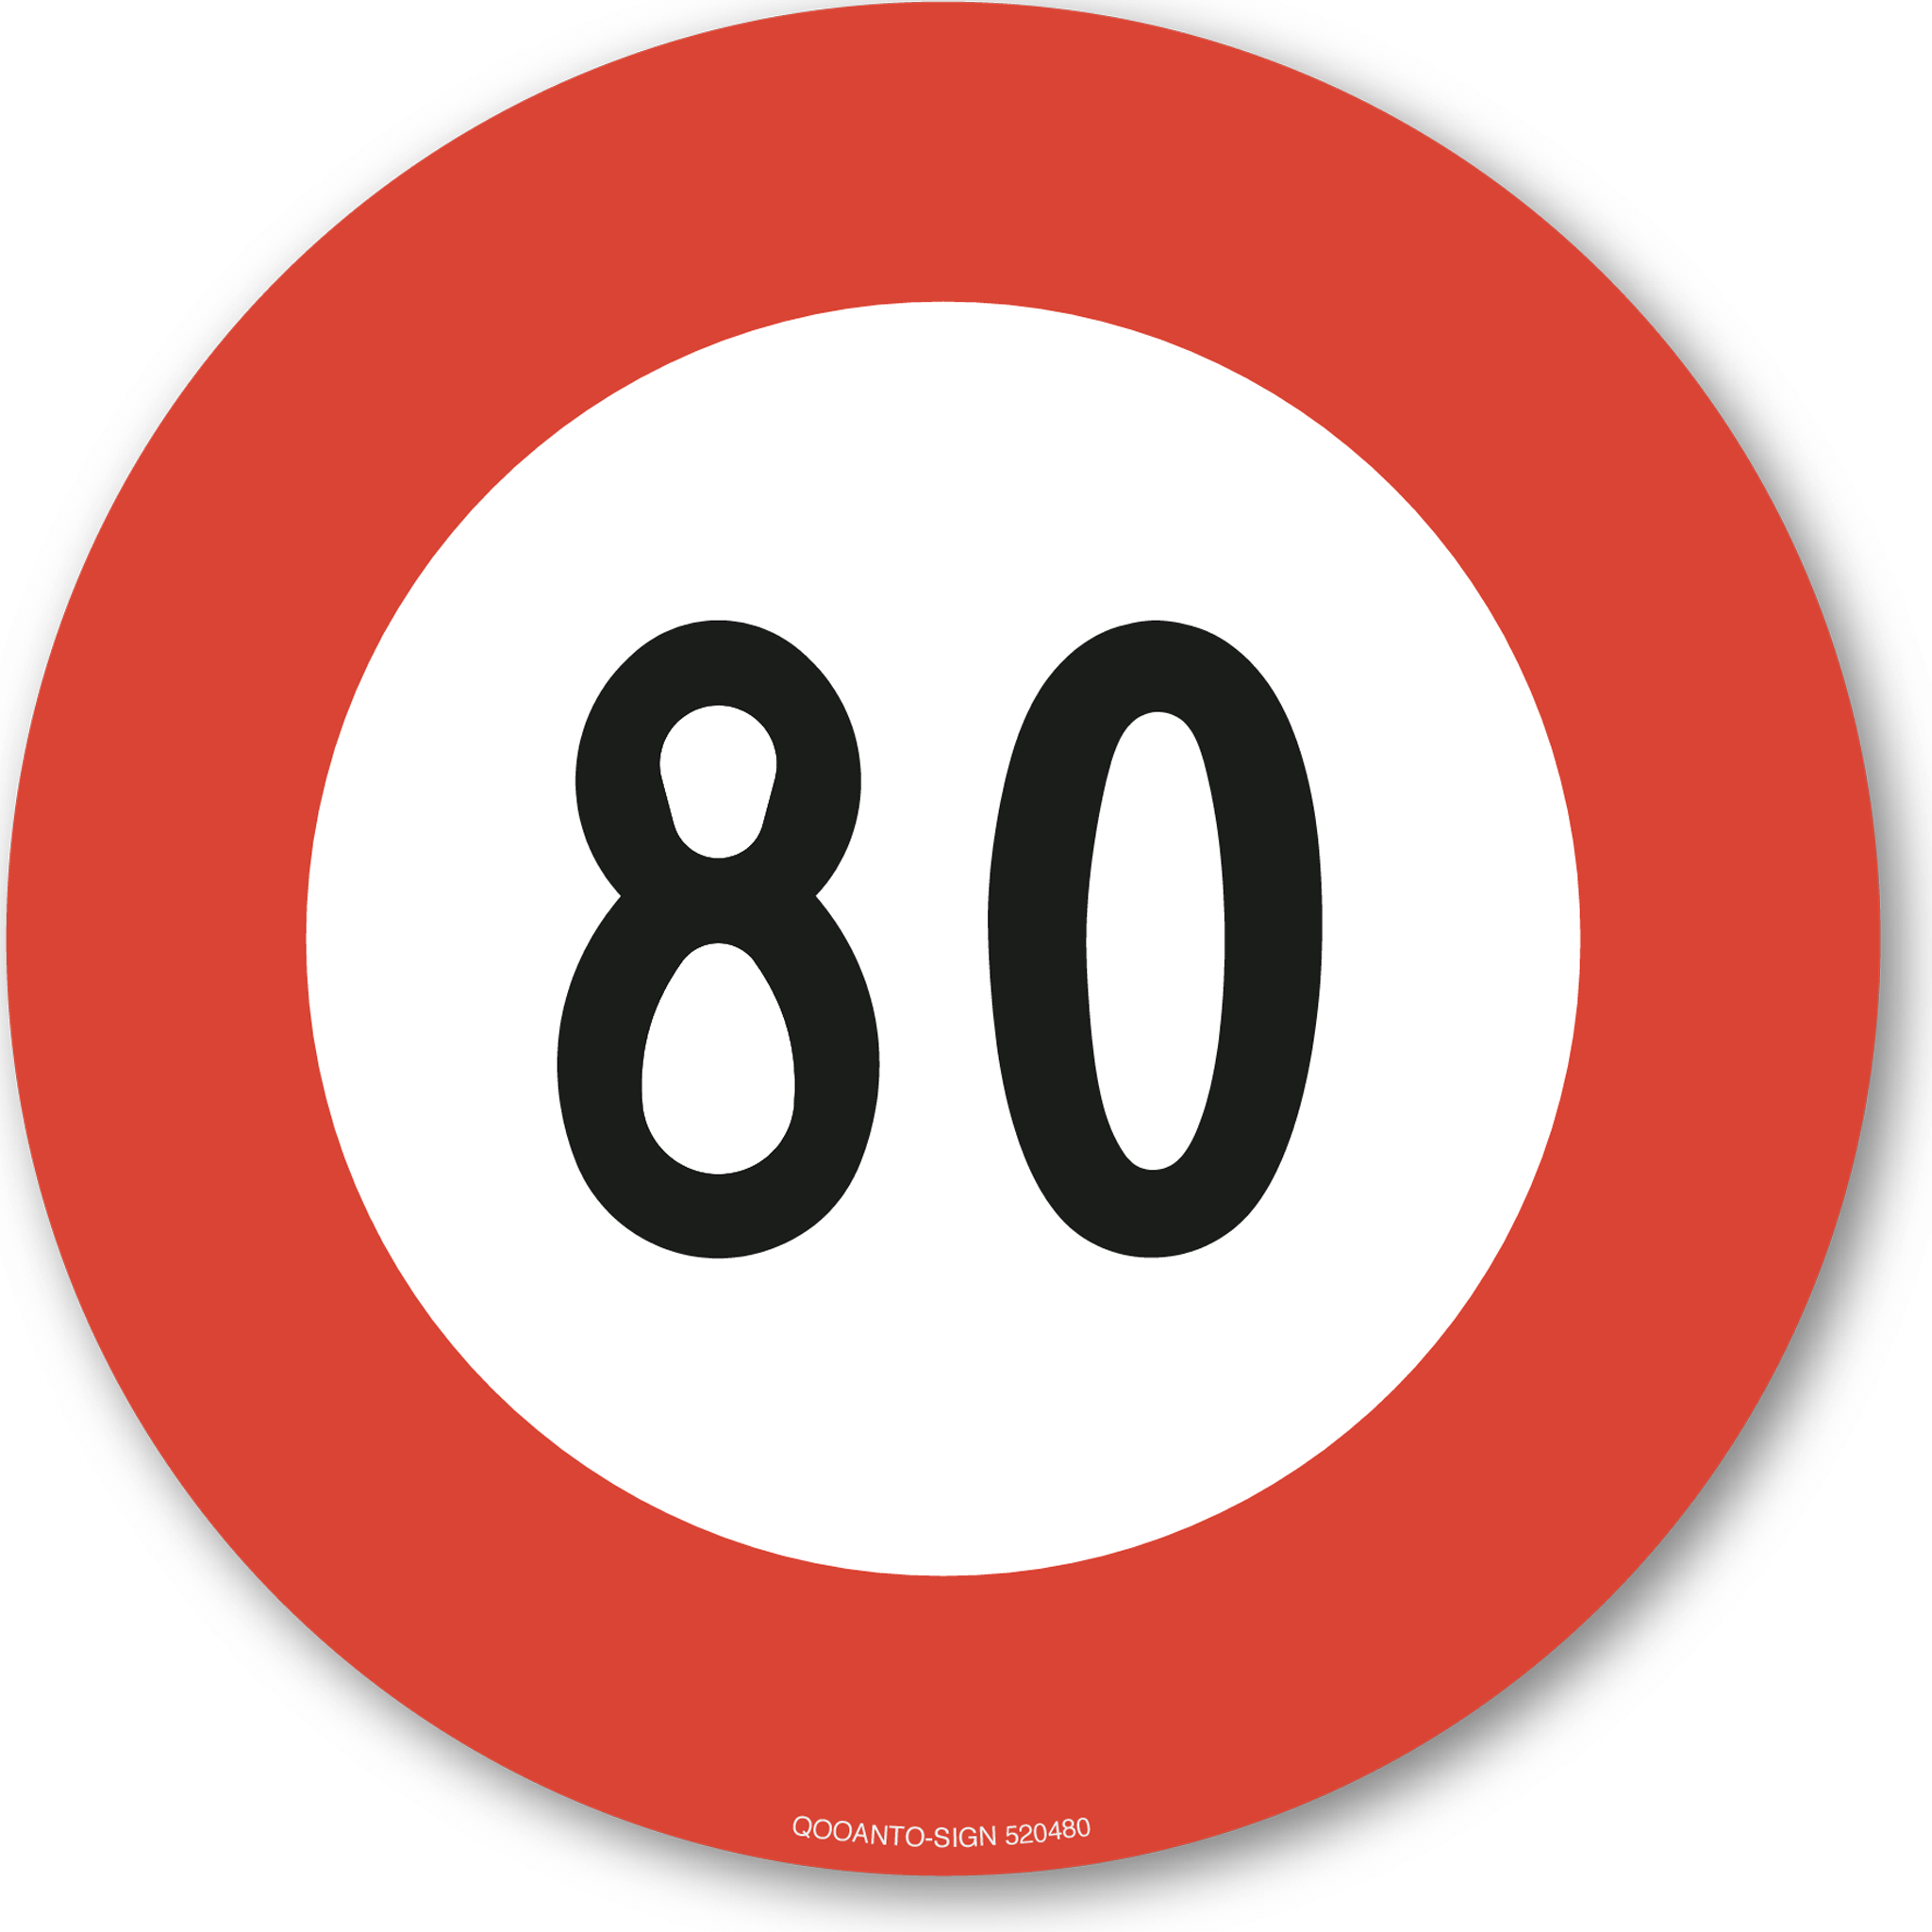 Höchstgeschwindigkeit - 80, Schild oder Aufkleber